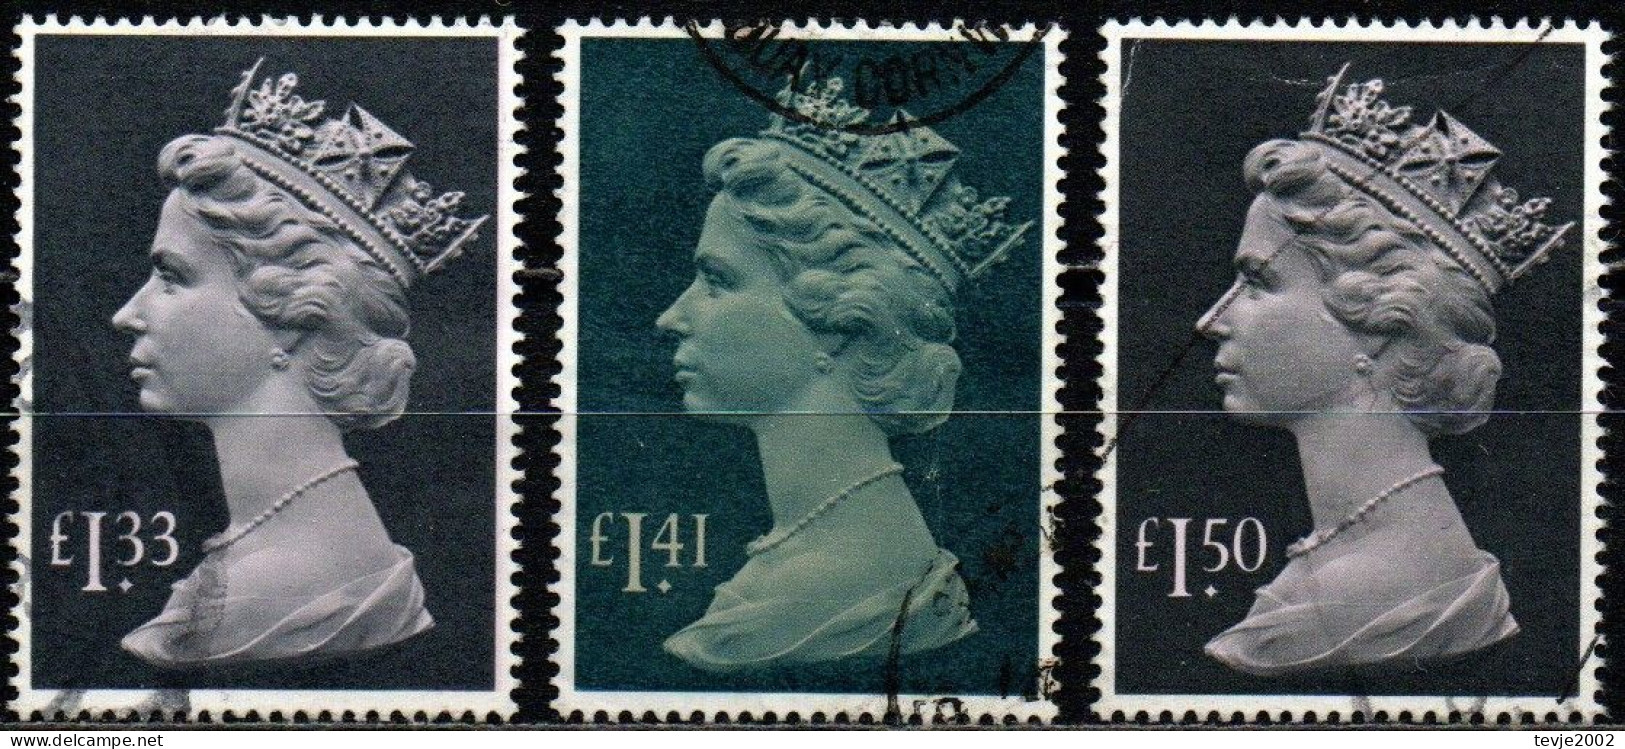 Großbritannien 1984 - 1986 - Mi.Nr. 1007 1043 1084 - Gestempelt Used - Machin - Machin-Ausgaben